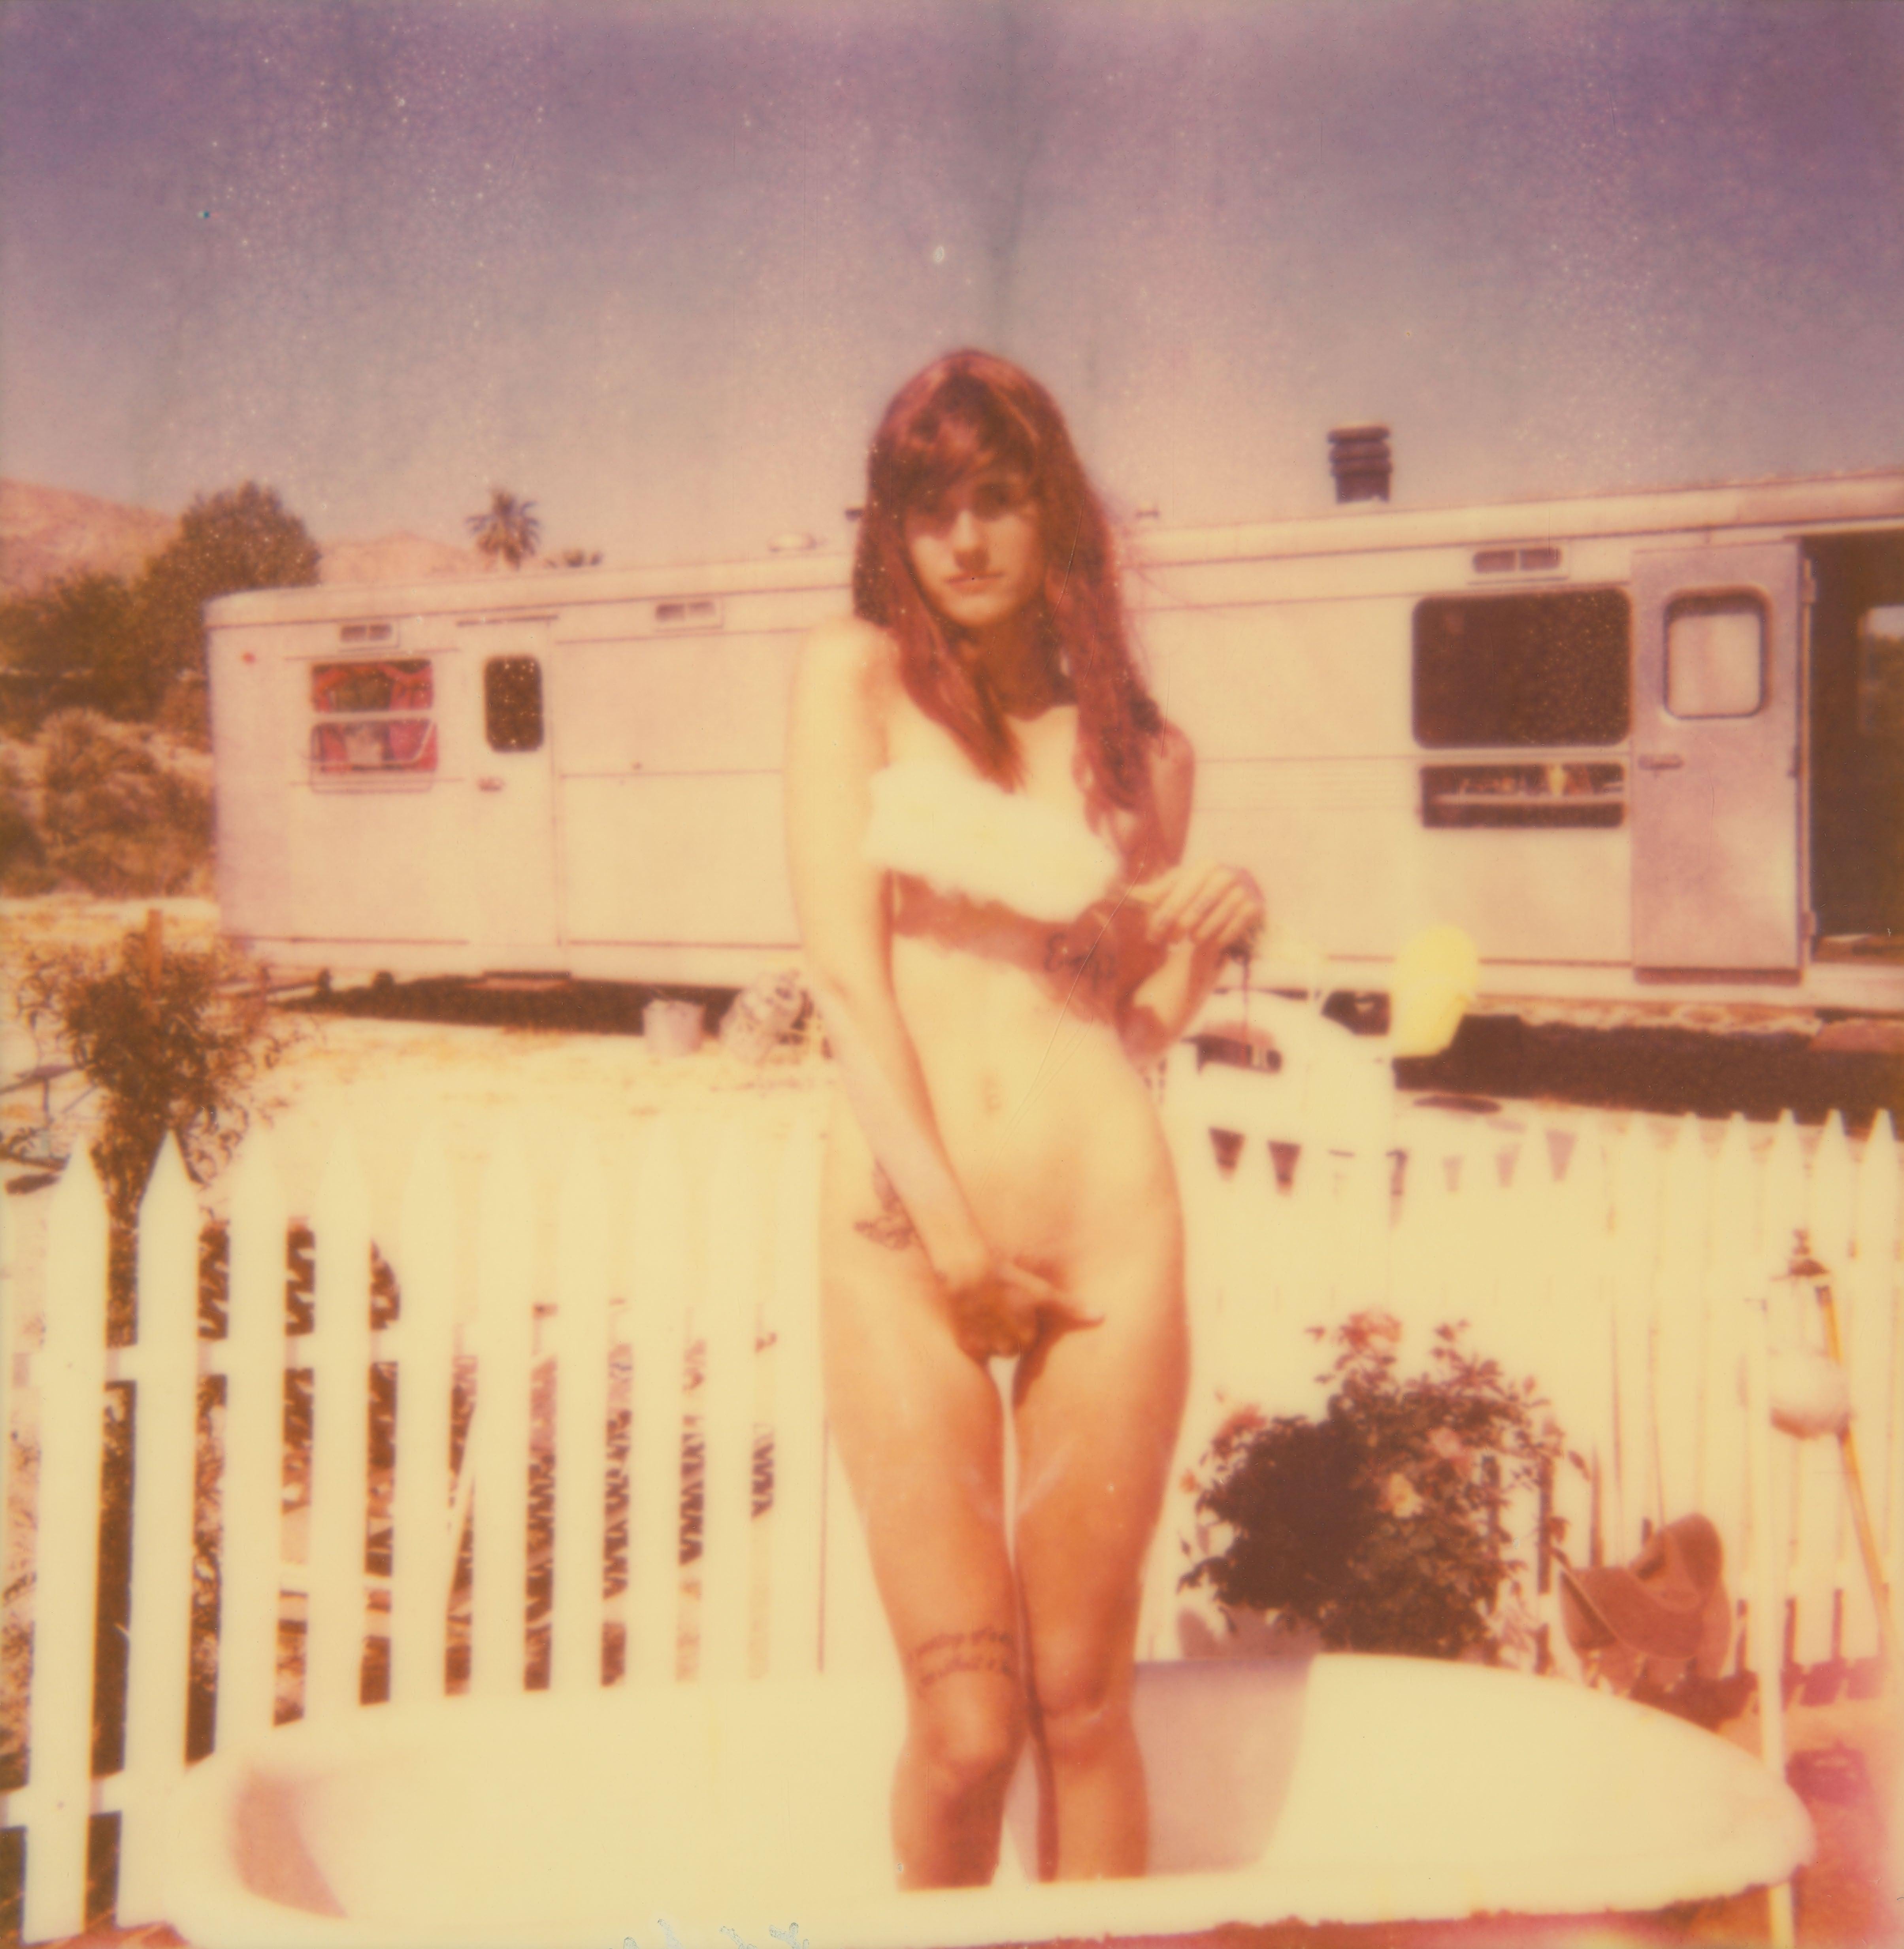 The Girl II (Behind the White Picket Fence) – 38x36cm – auf einem Polaroid basiert